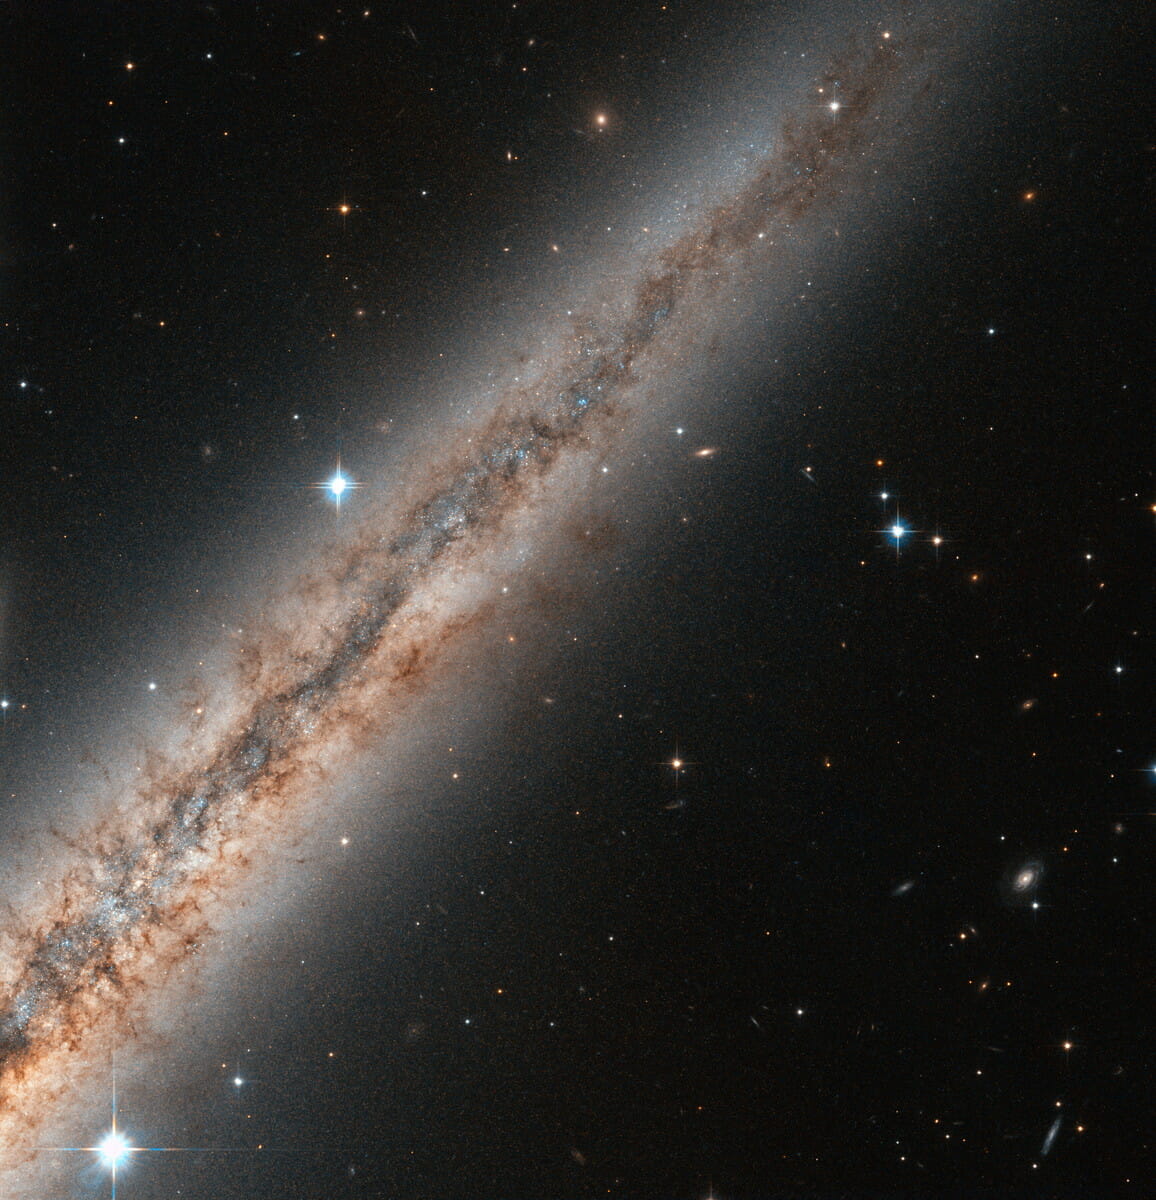 宇宙に生じた裂け目のよう。“アンドロメダ座”の渦巻銀河「NGC 891」